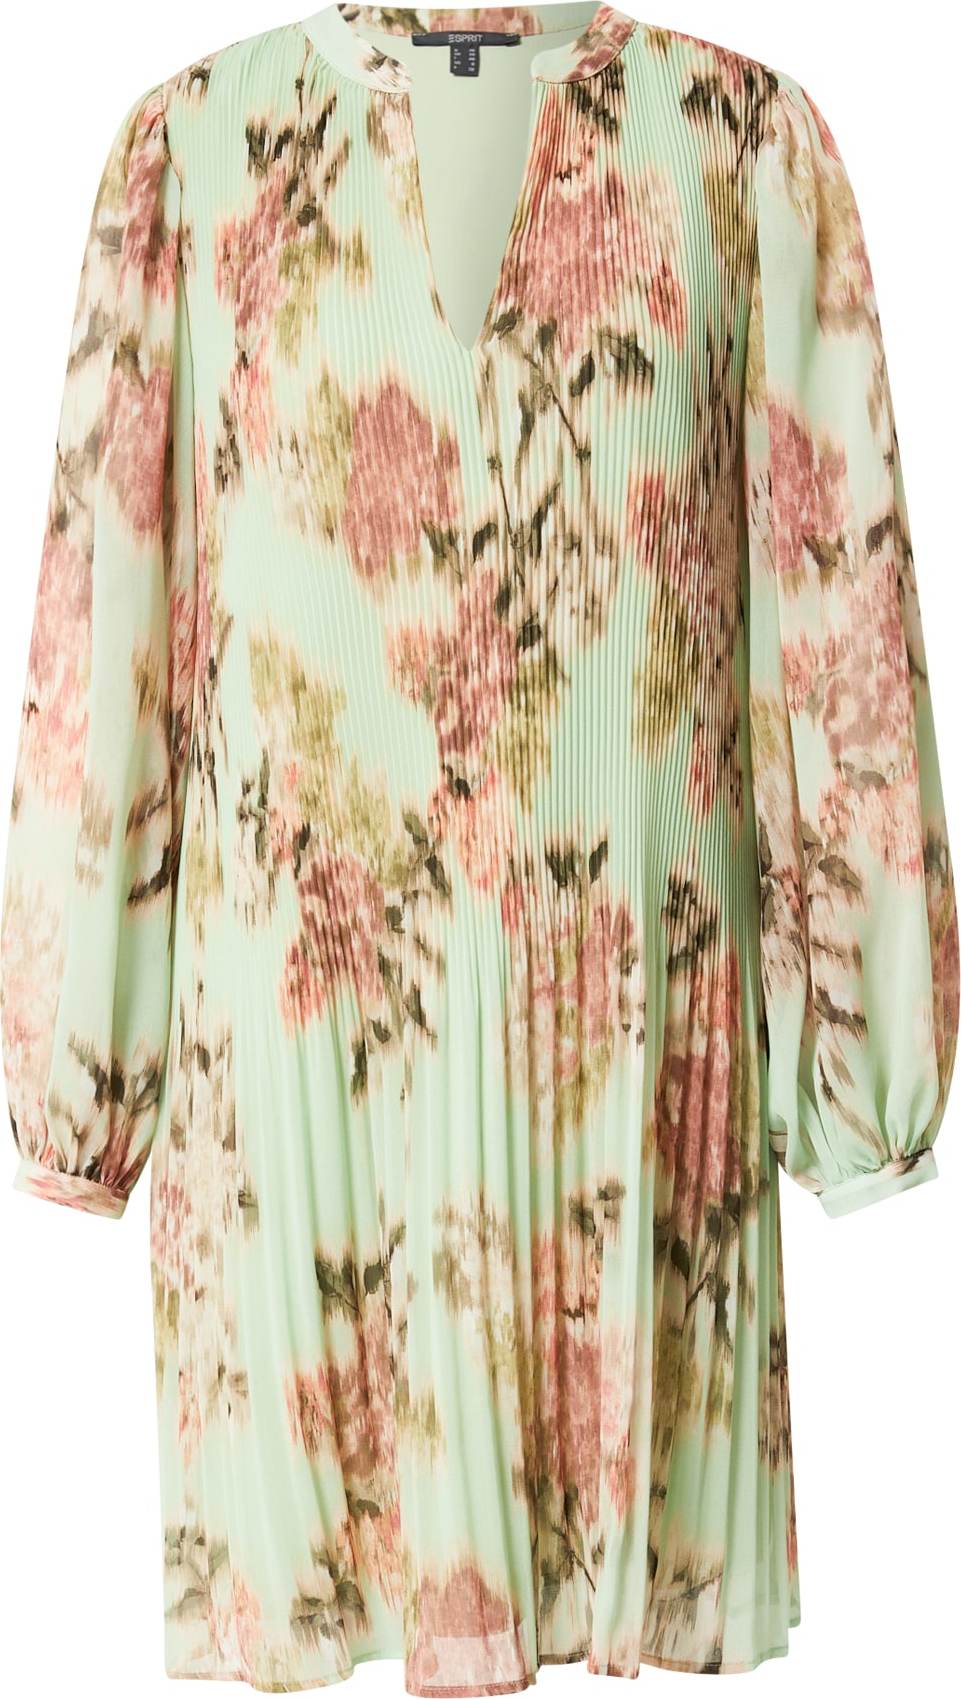 Esprit Collection Košilové šaty 'Fluent Geor' pastelově zelená / jablko / růže